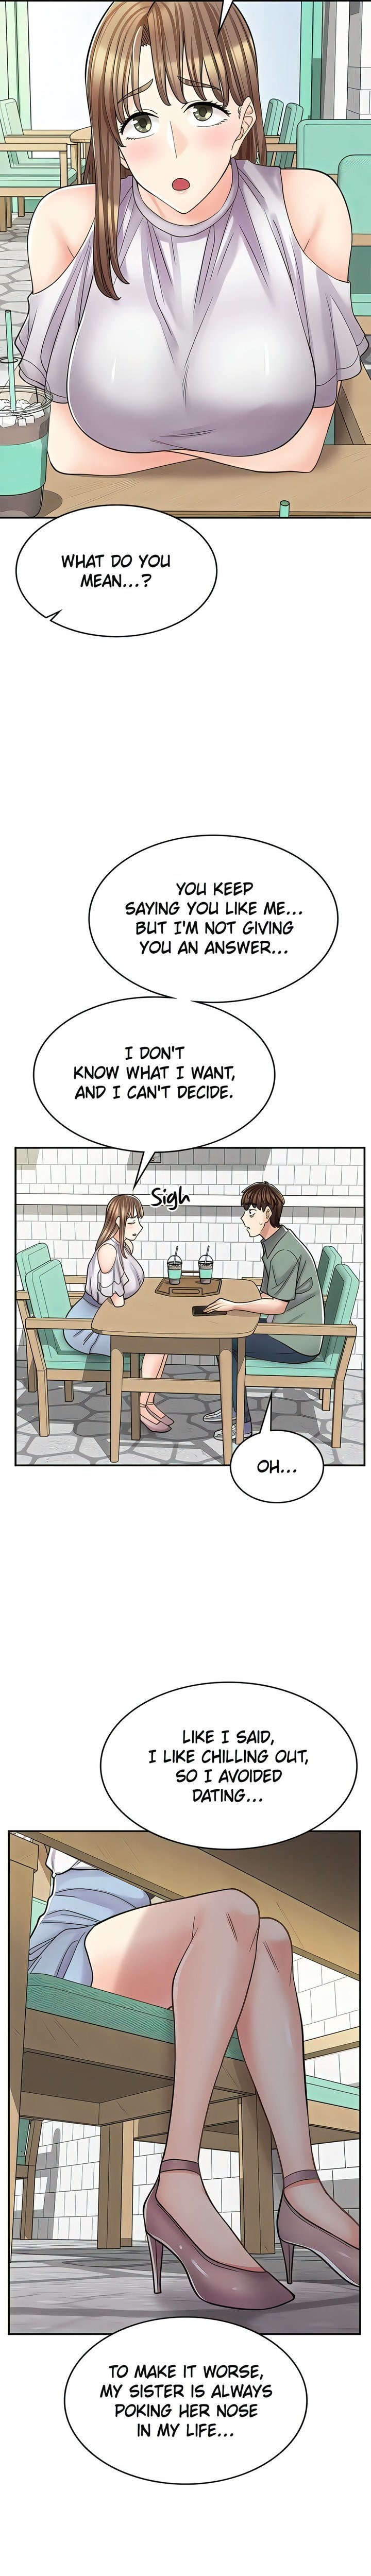 erotic-manga-cafe-girls-chap-39-10